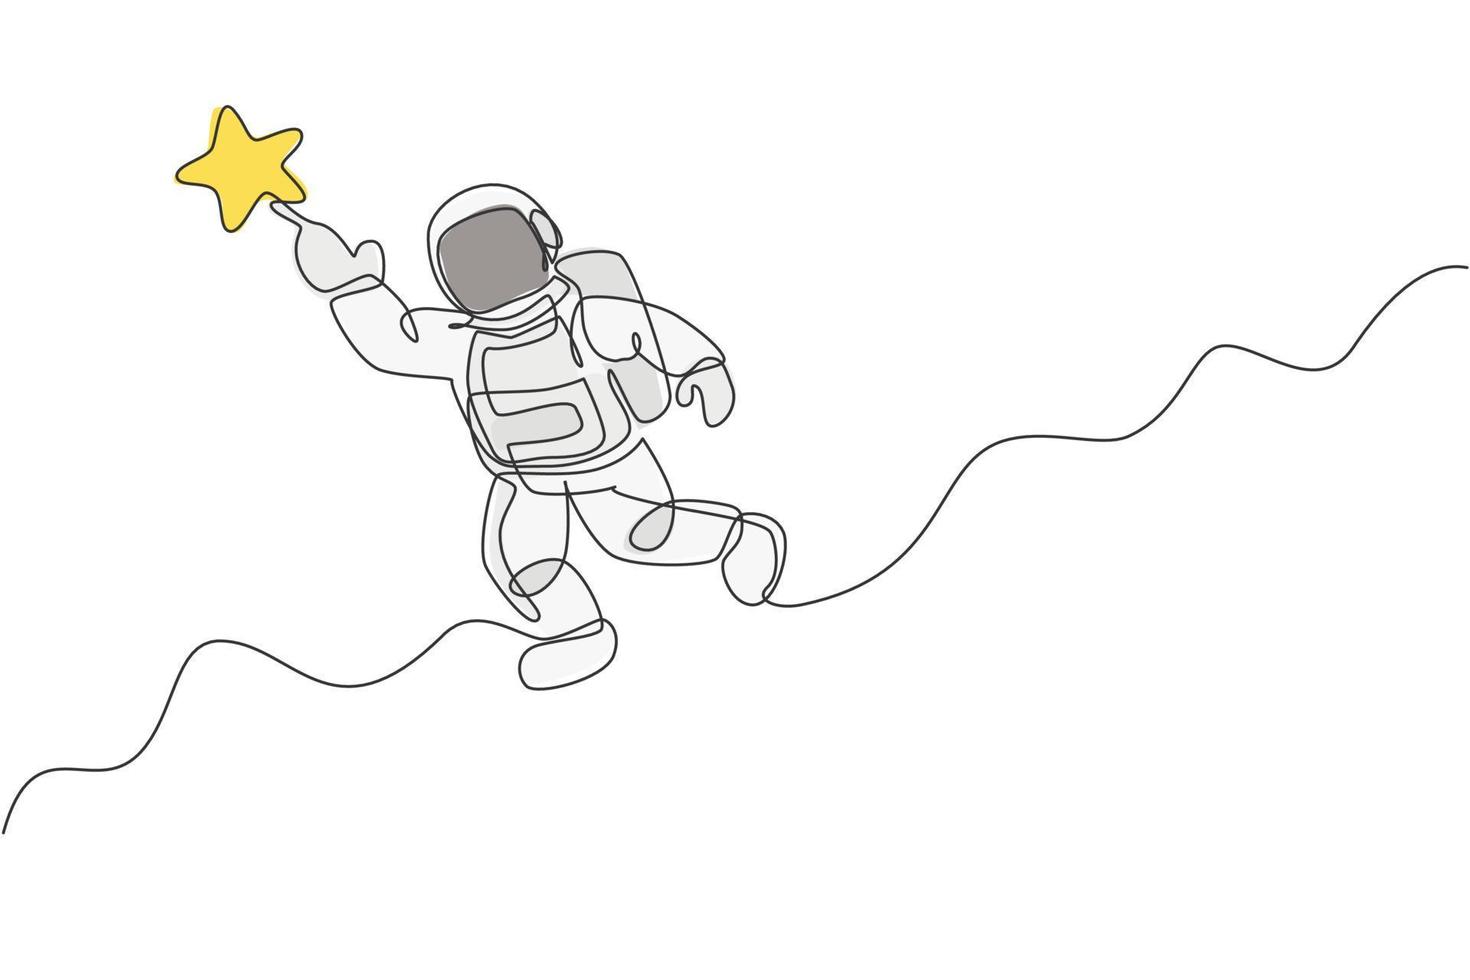 eine durchgehende Strichzeichnung eines Kosmonauten, der den Weltraum erforscht. Astronaut erreicht fliegenden Stern. Fantasy-Konzept zur Entdeckung der kosmischen Galaxie. dynamische einzeilige Grafikdesign-Vektorillustration zeichnen vektor